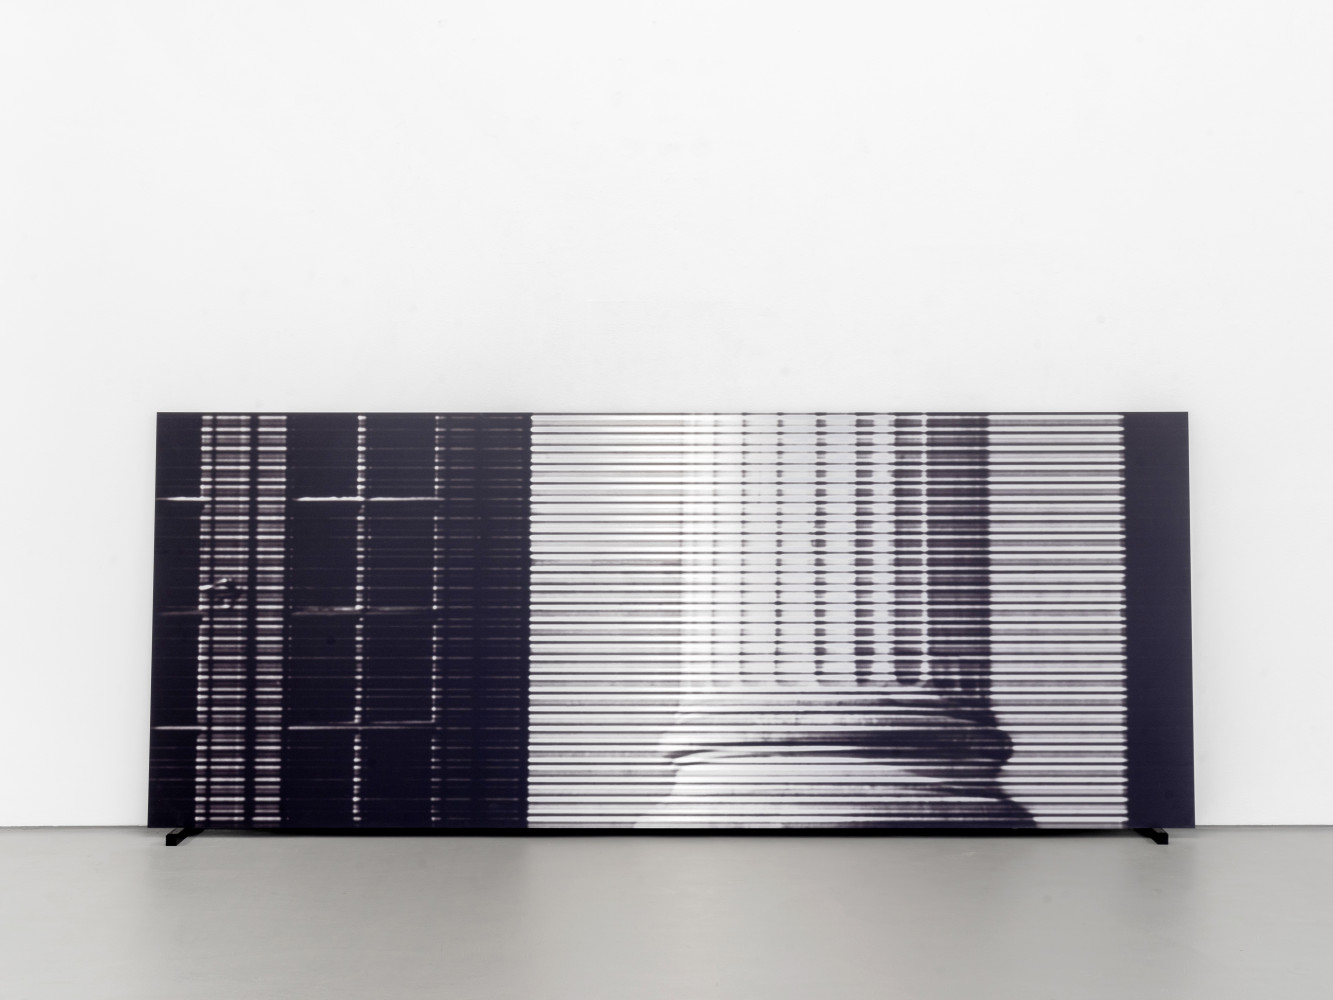 Bettina Pousttchi, ‘Column, 2021 Pigment auf Aluminium / pigment on aluminium ’, 2021